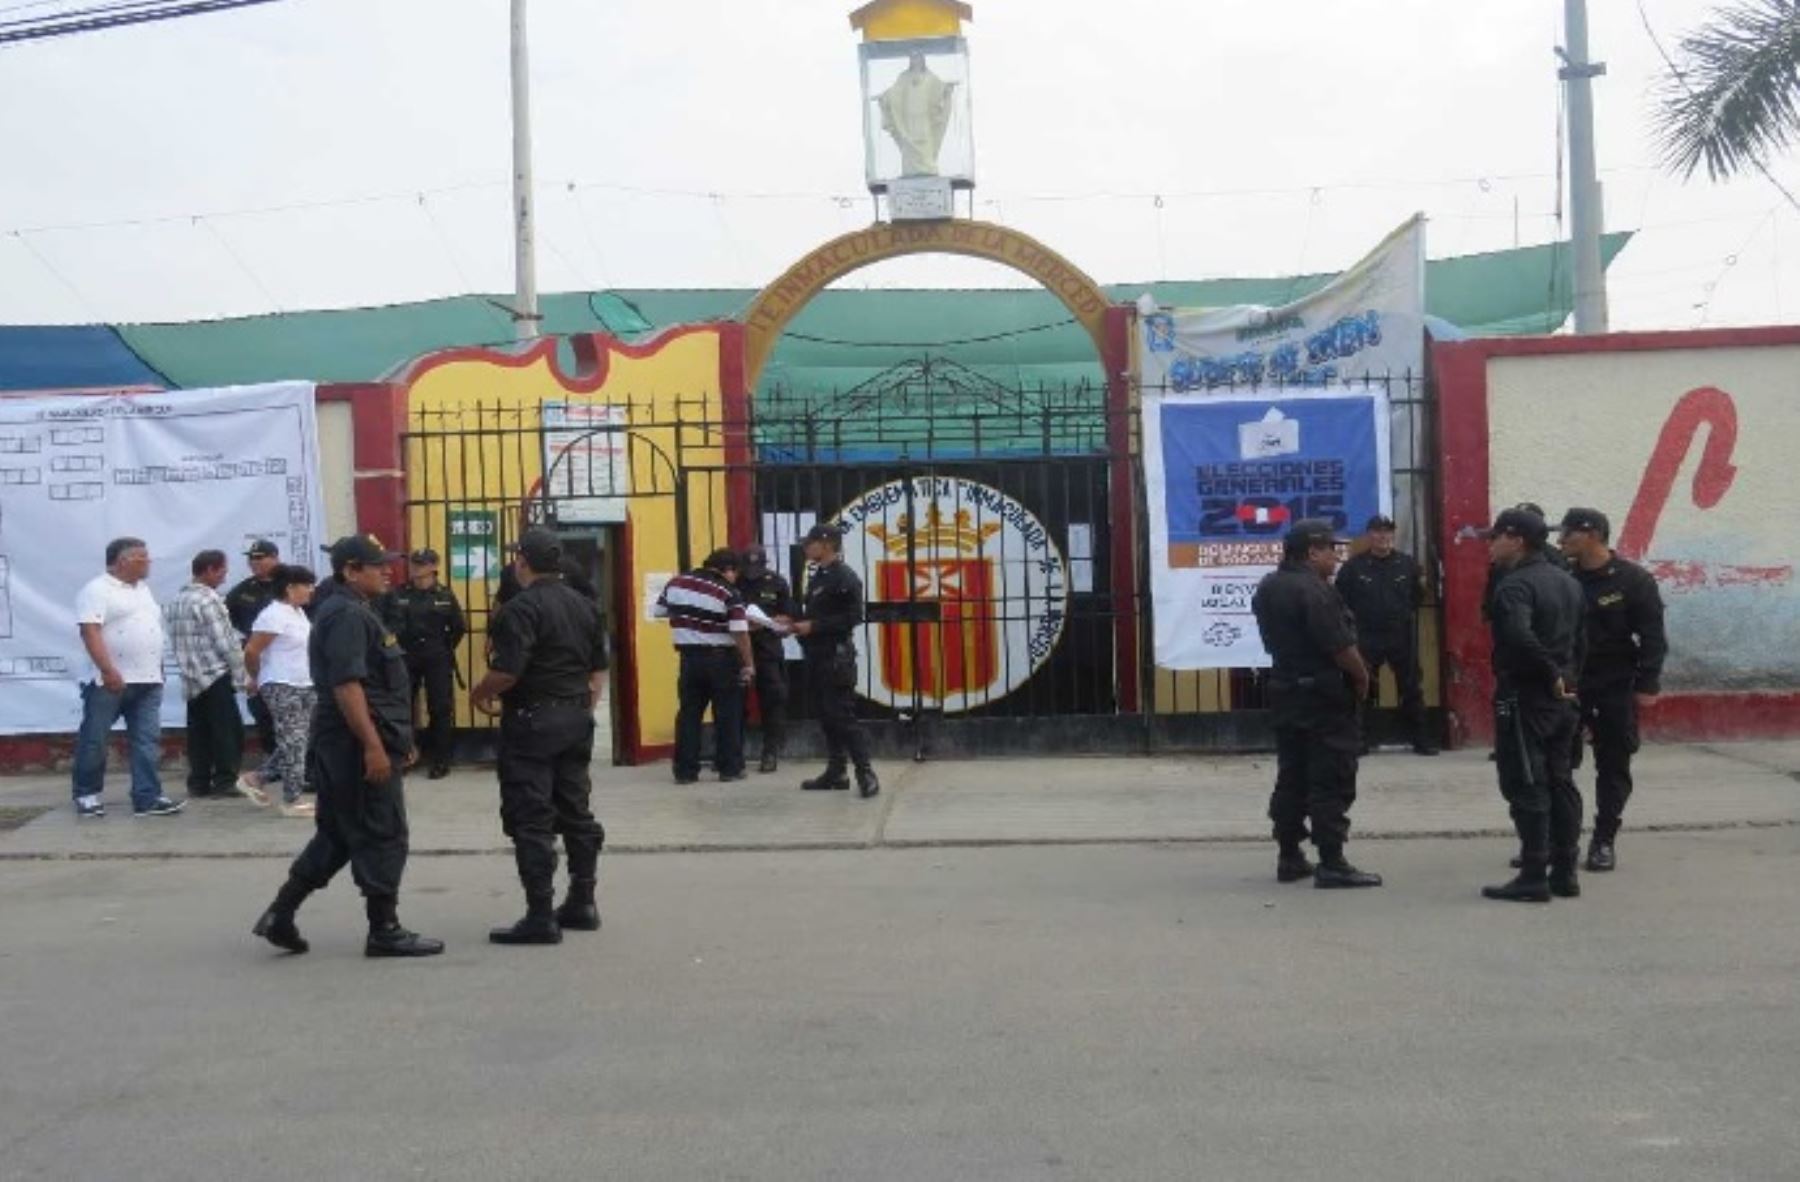 Más de 3,000 efectivos de la Policía Nacional del Perú (PNP) se desplazarán en distintas provincias de la región Áncash, para garantizar el orden público y la seguridad durante este domingo 7 de octubre, día de las Elecciones Regionales y Municipales que se realizarán en todo el país.